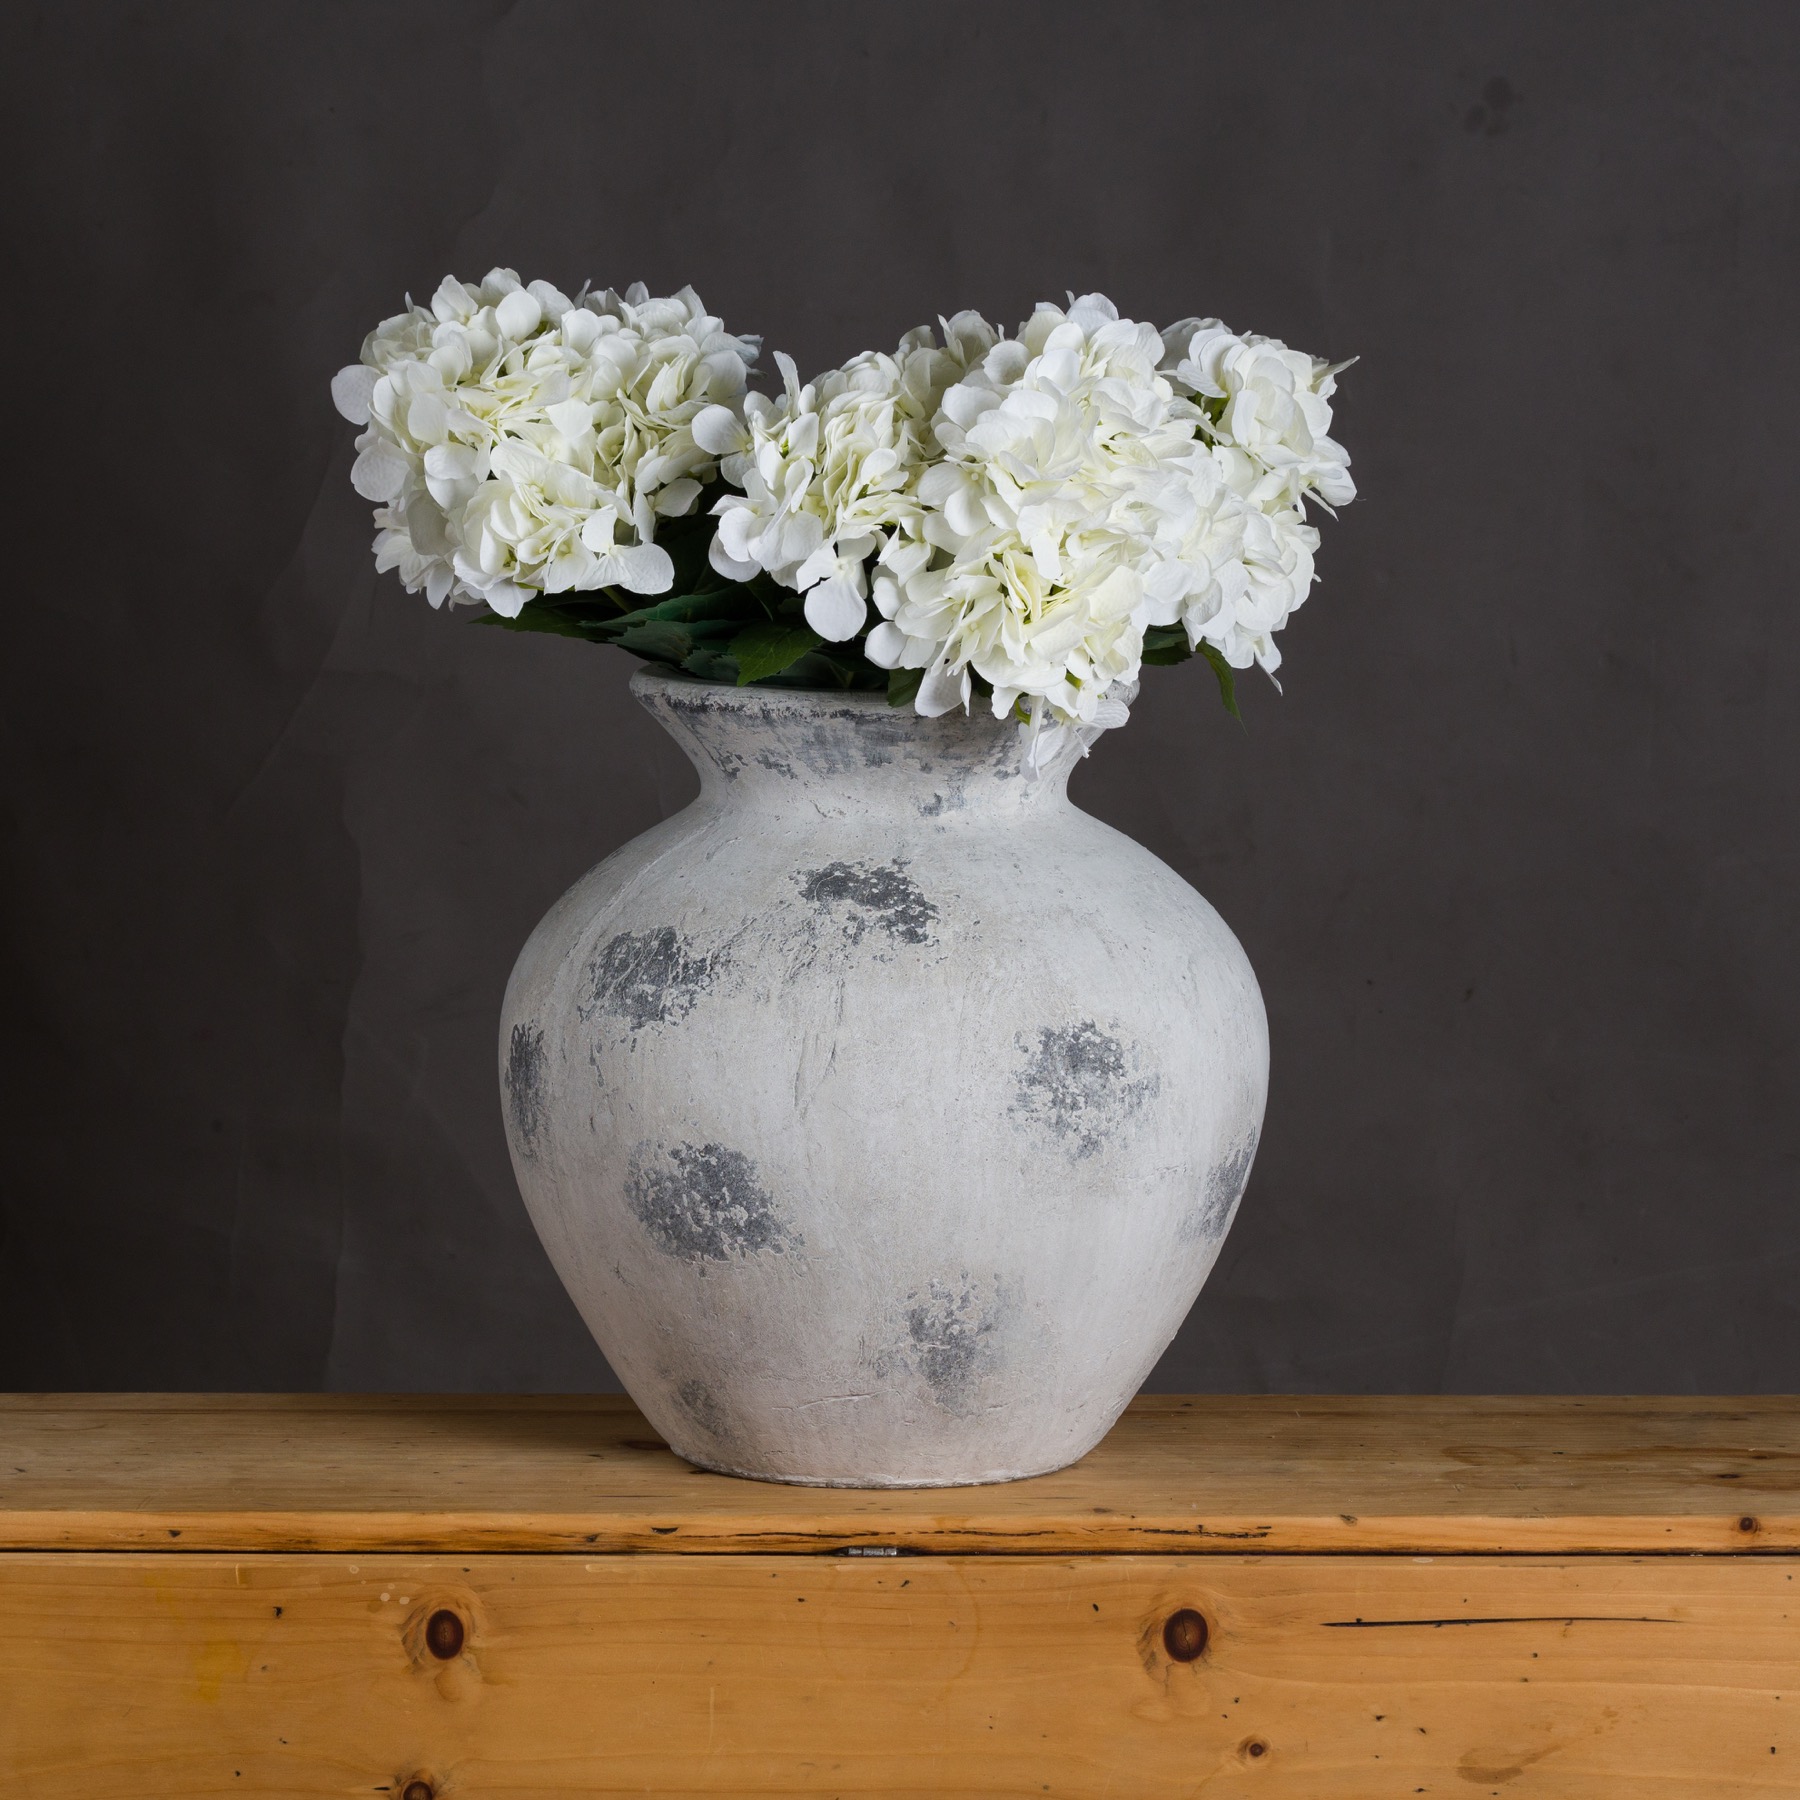 Downton Large Antique White Vase - Image 3